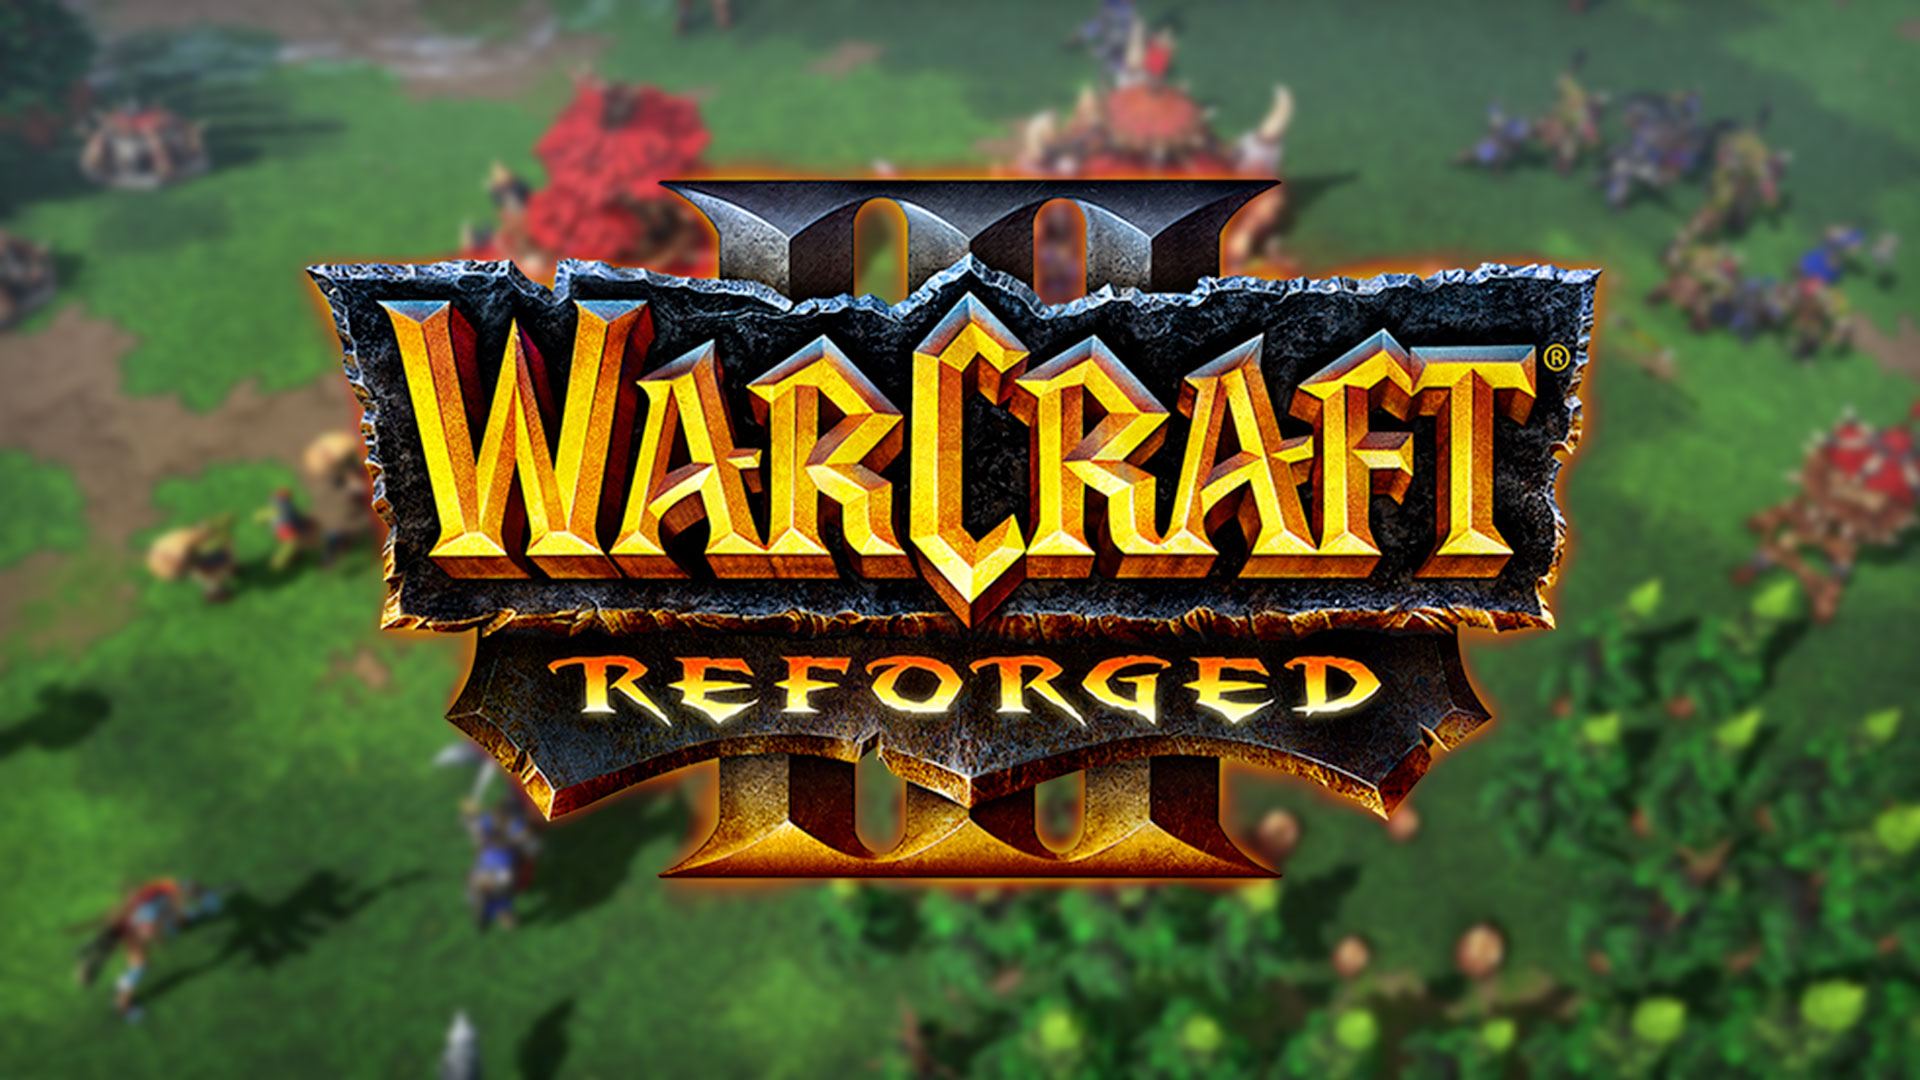 Les acheteurs de Warcraft III: Reforged vont pouvoir se faire rembourser